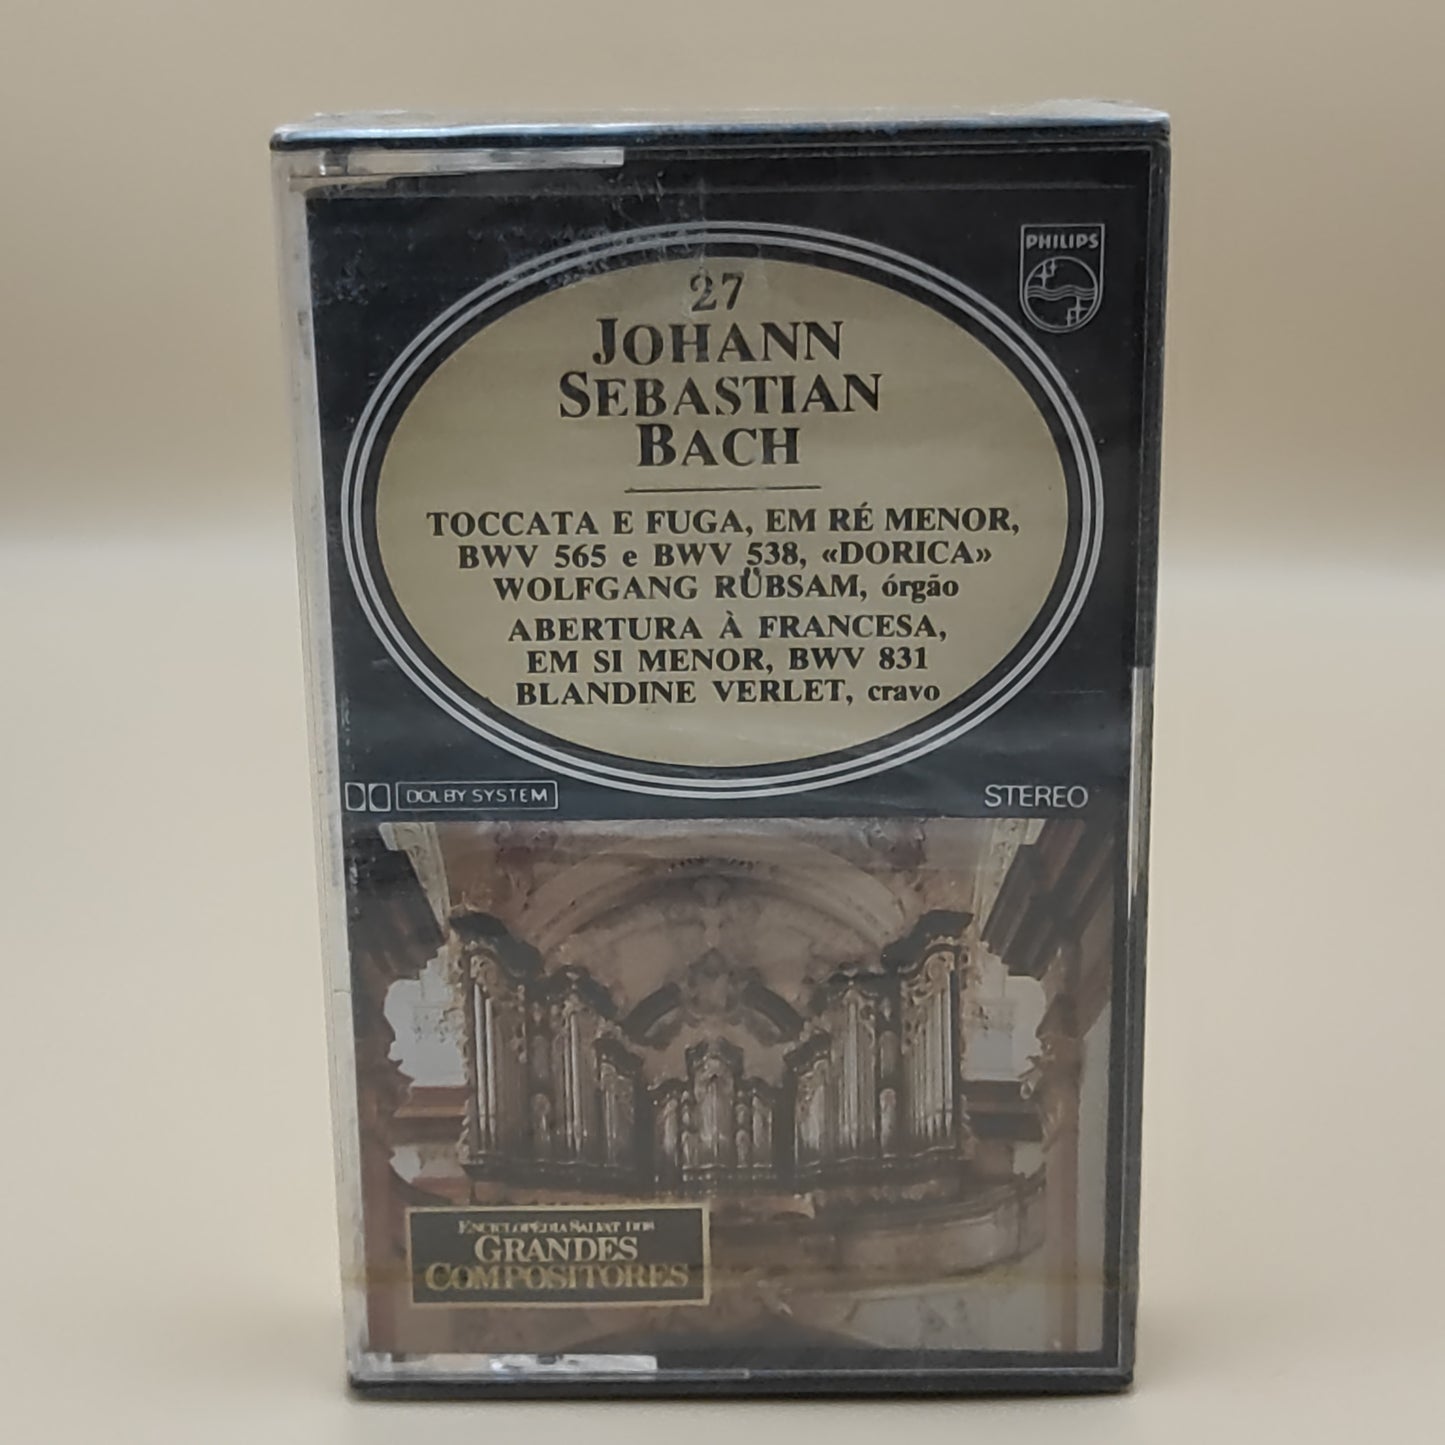 Johann Sebastian Bach - Peças para órgão/ Abertura para o cravo